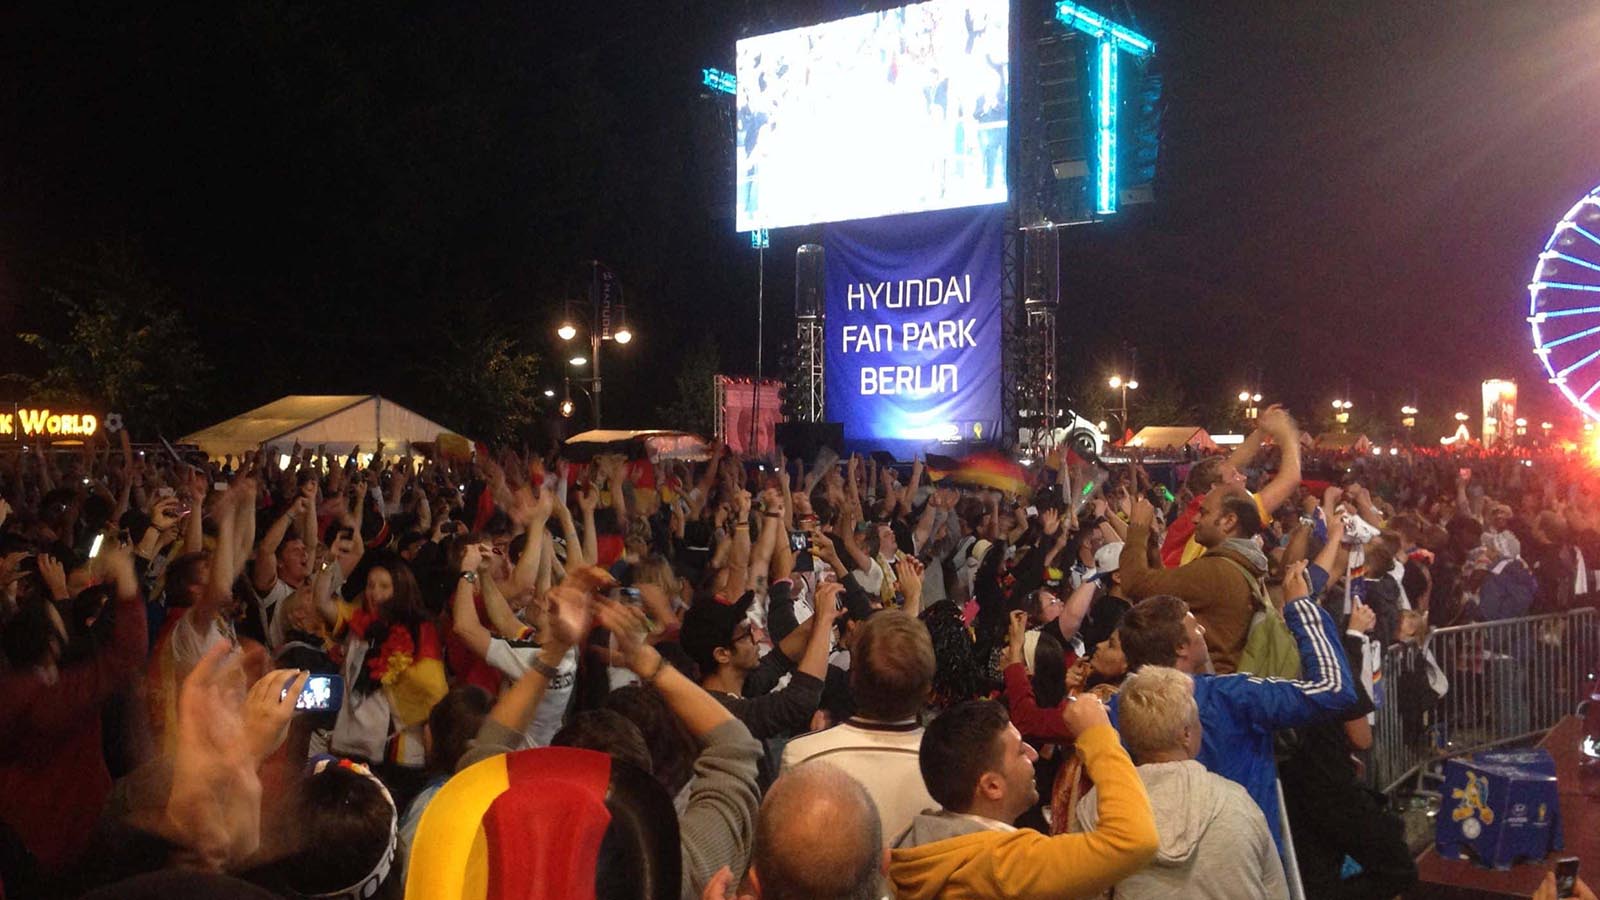 wlan mieten für event in berlin fanmeile 2014 deutschland fussball weltmeister hyundai fanpark